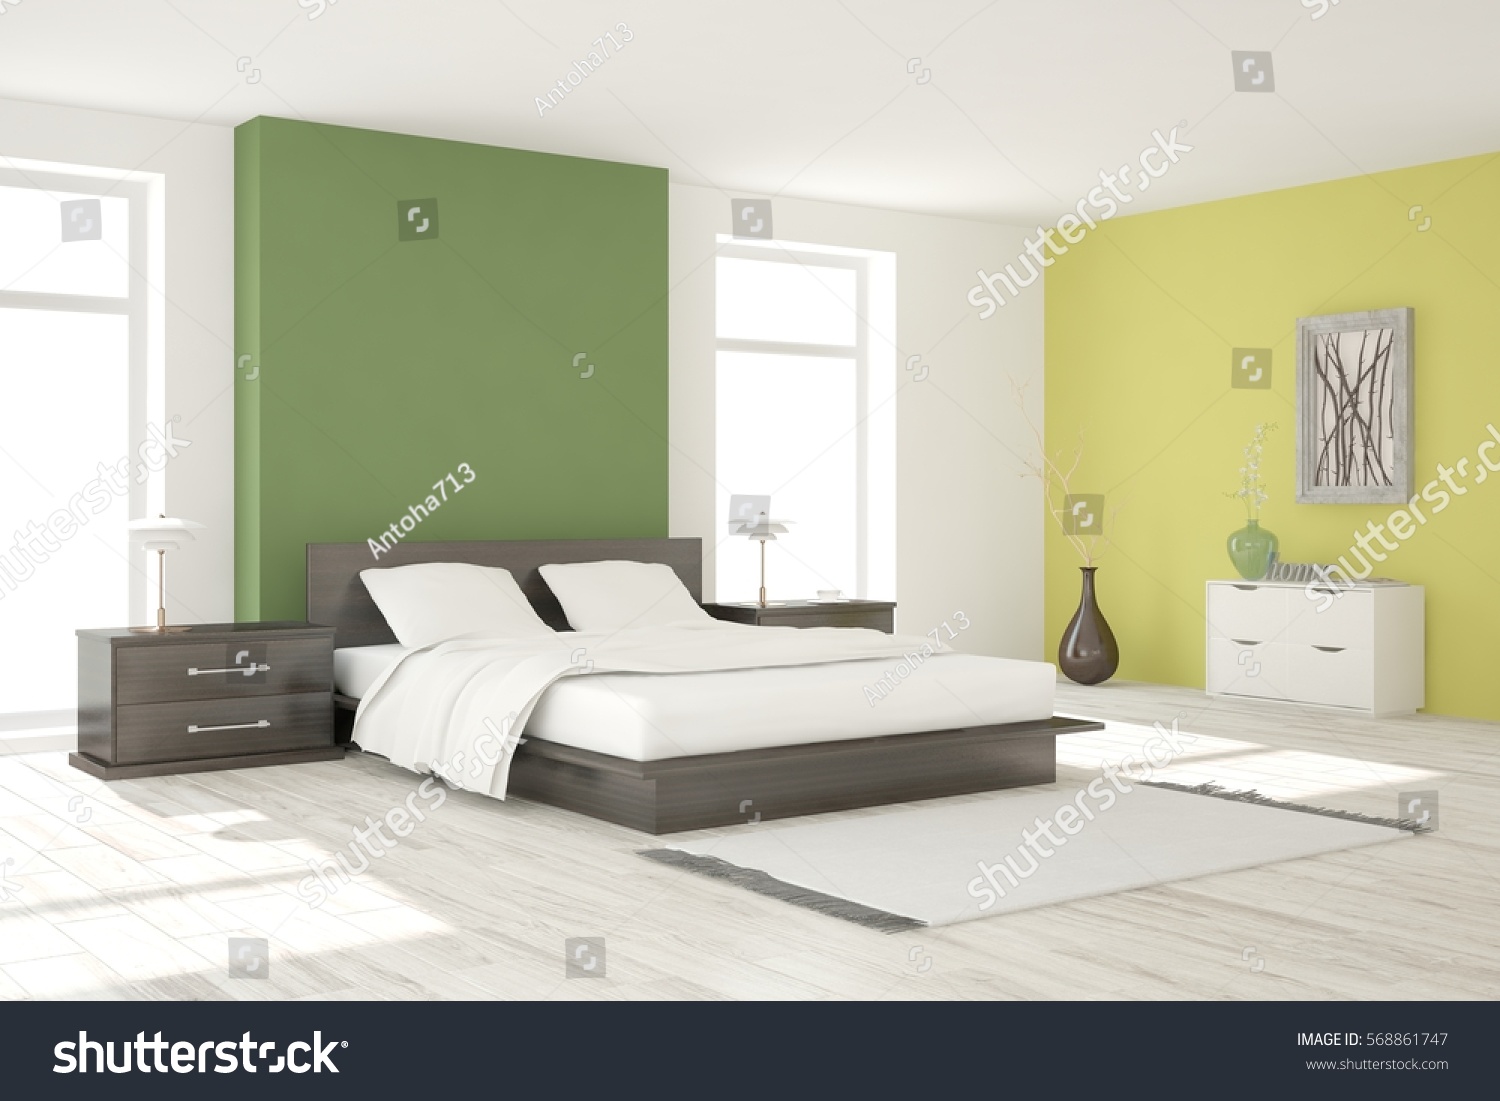 Green bedroom. Scandinavian interior design. 3D illustration #568861747